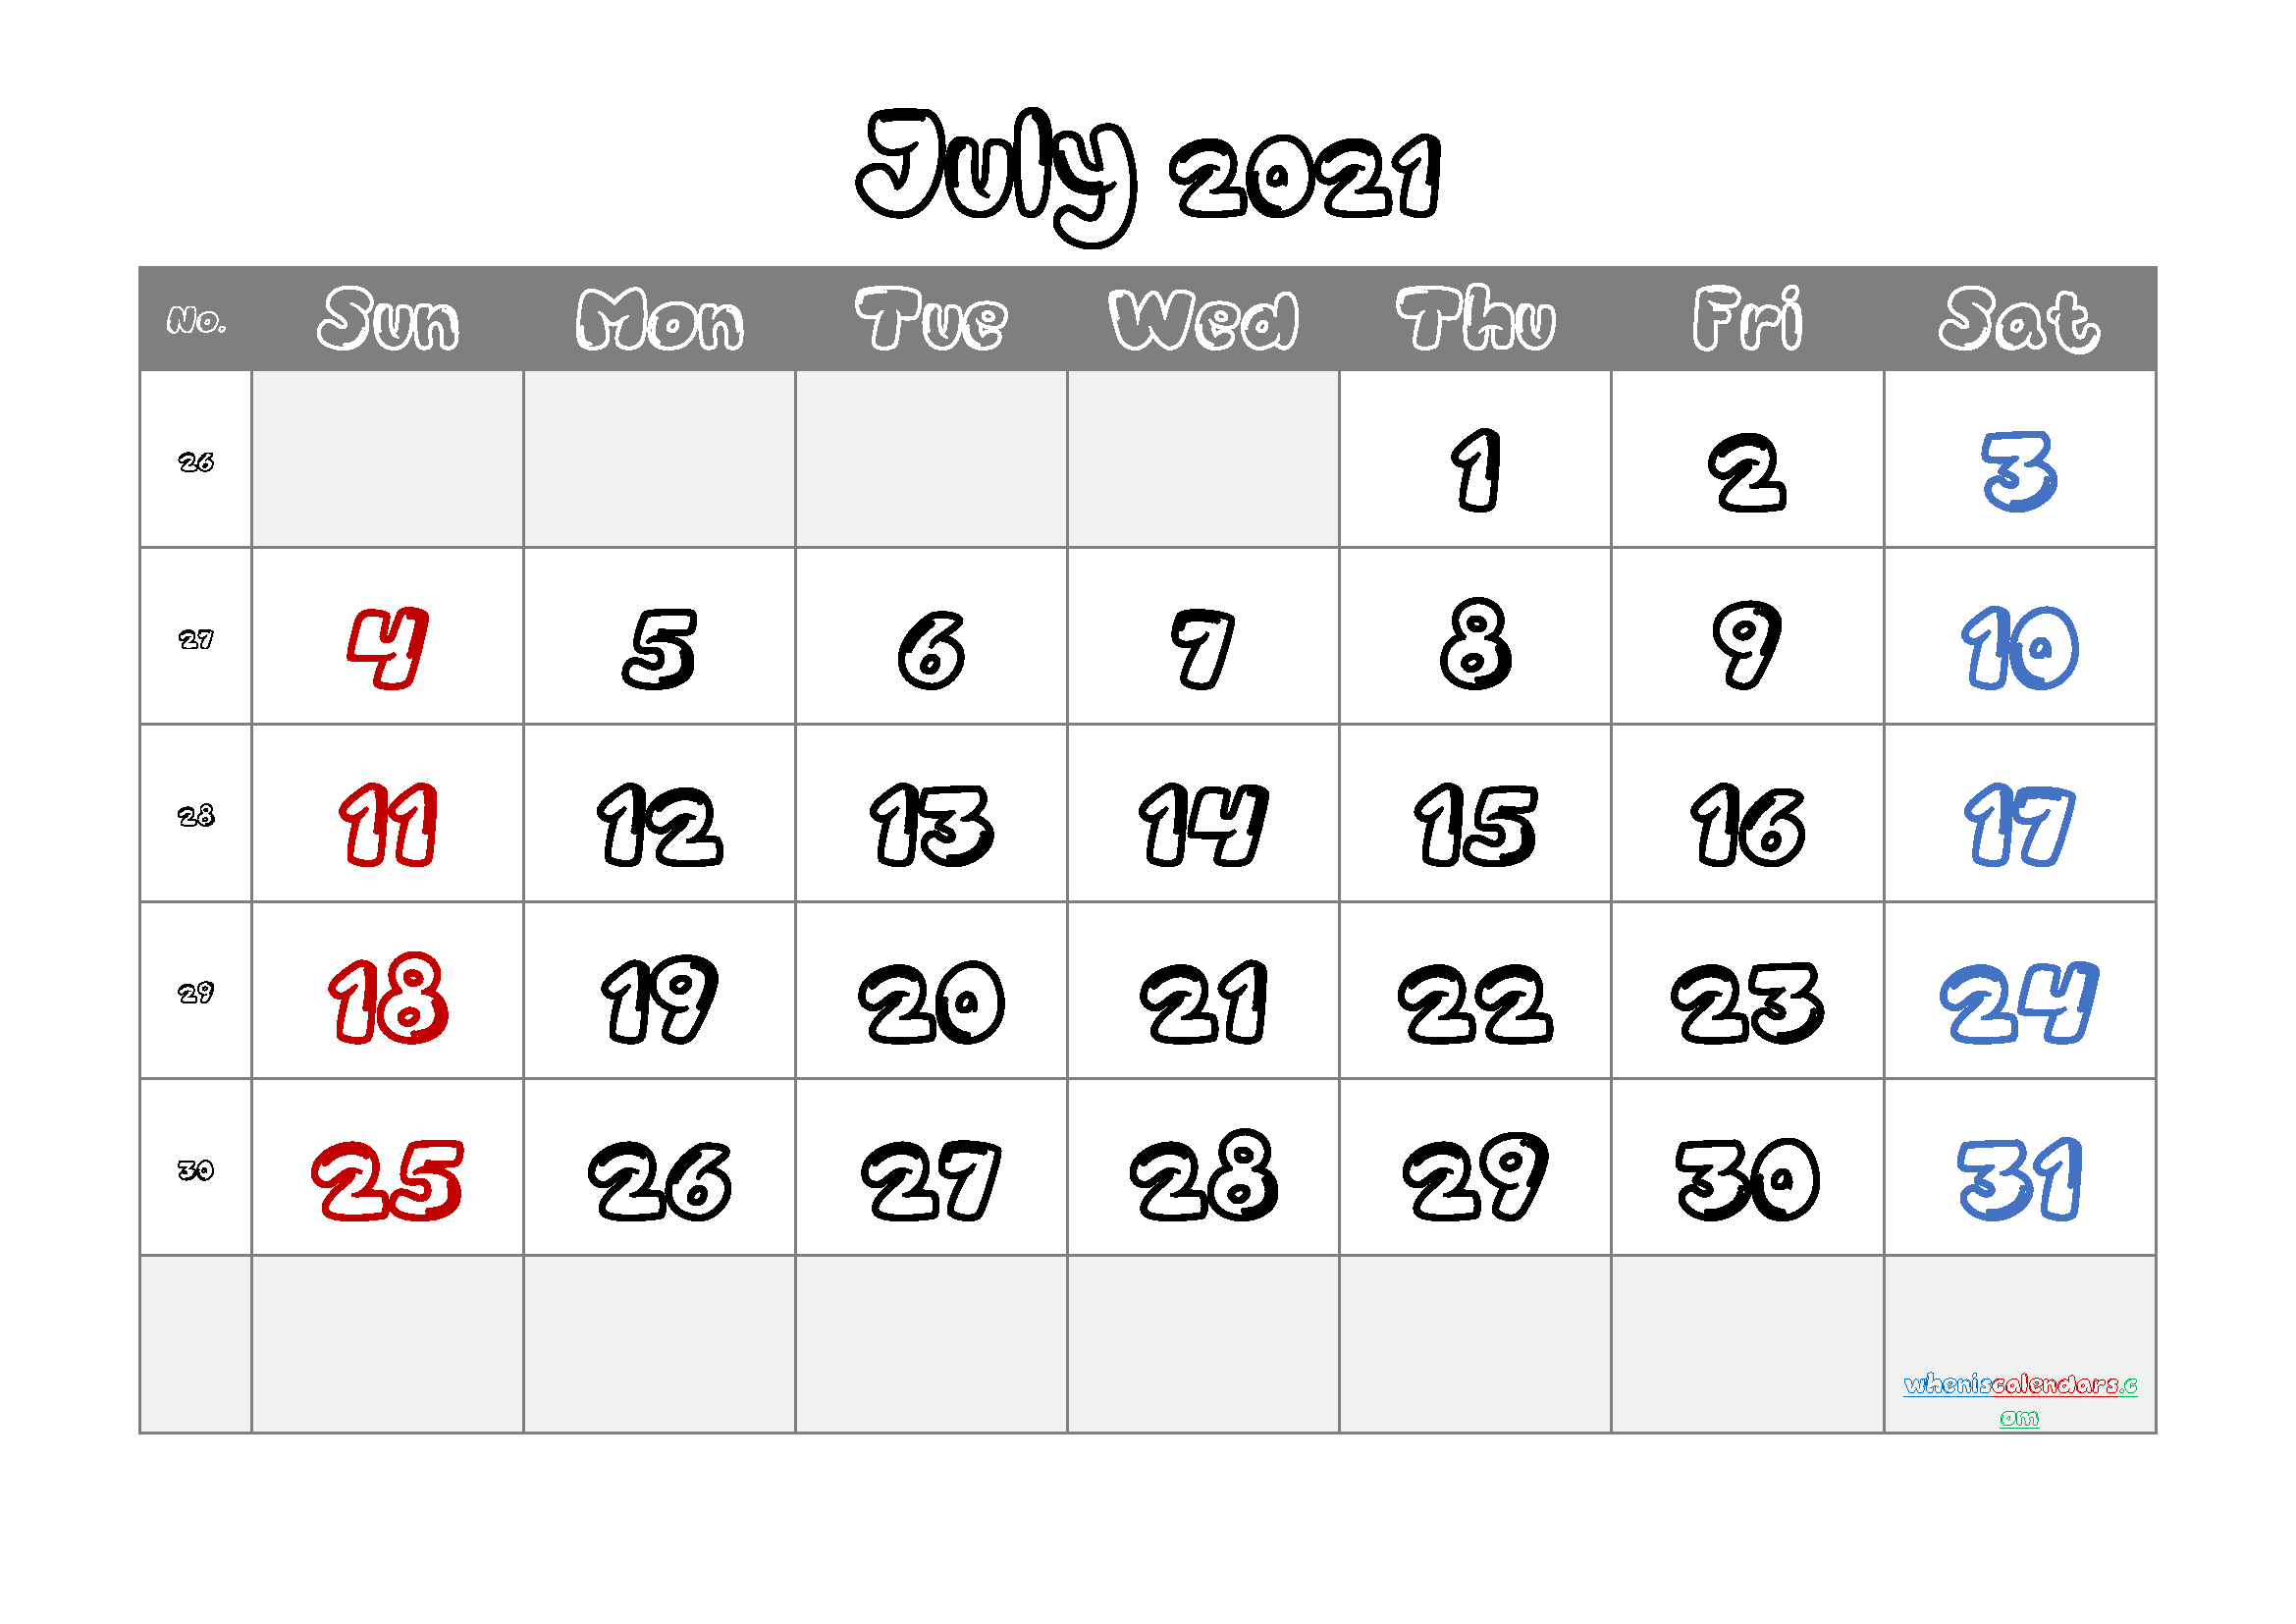 free printable july 2021 calendar with week numbers